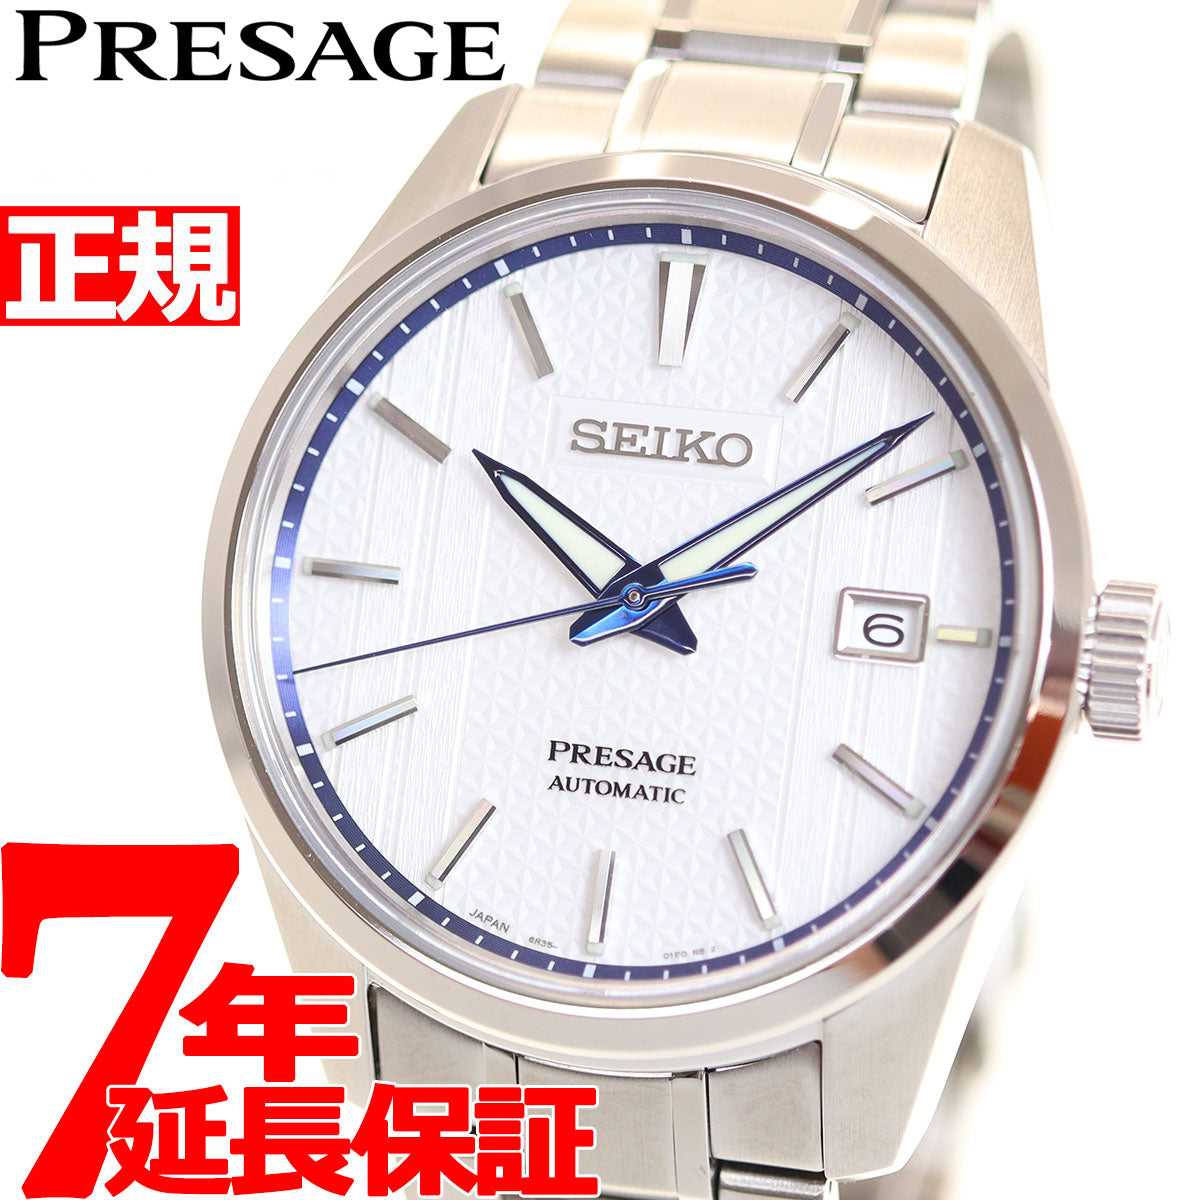 セイコー プレザージュ 腕時計 SARX093 SEIKO メカニカル | kensysgas.com